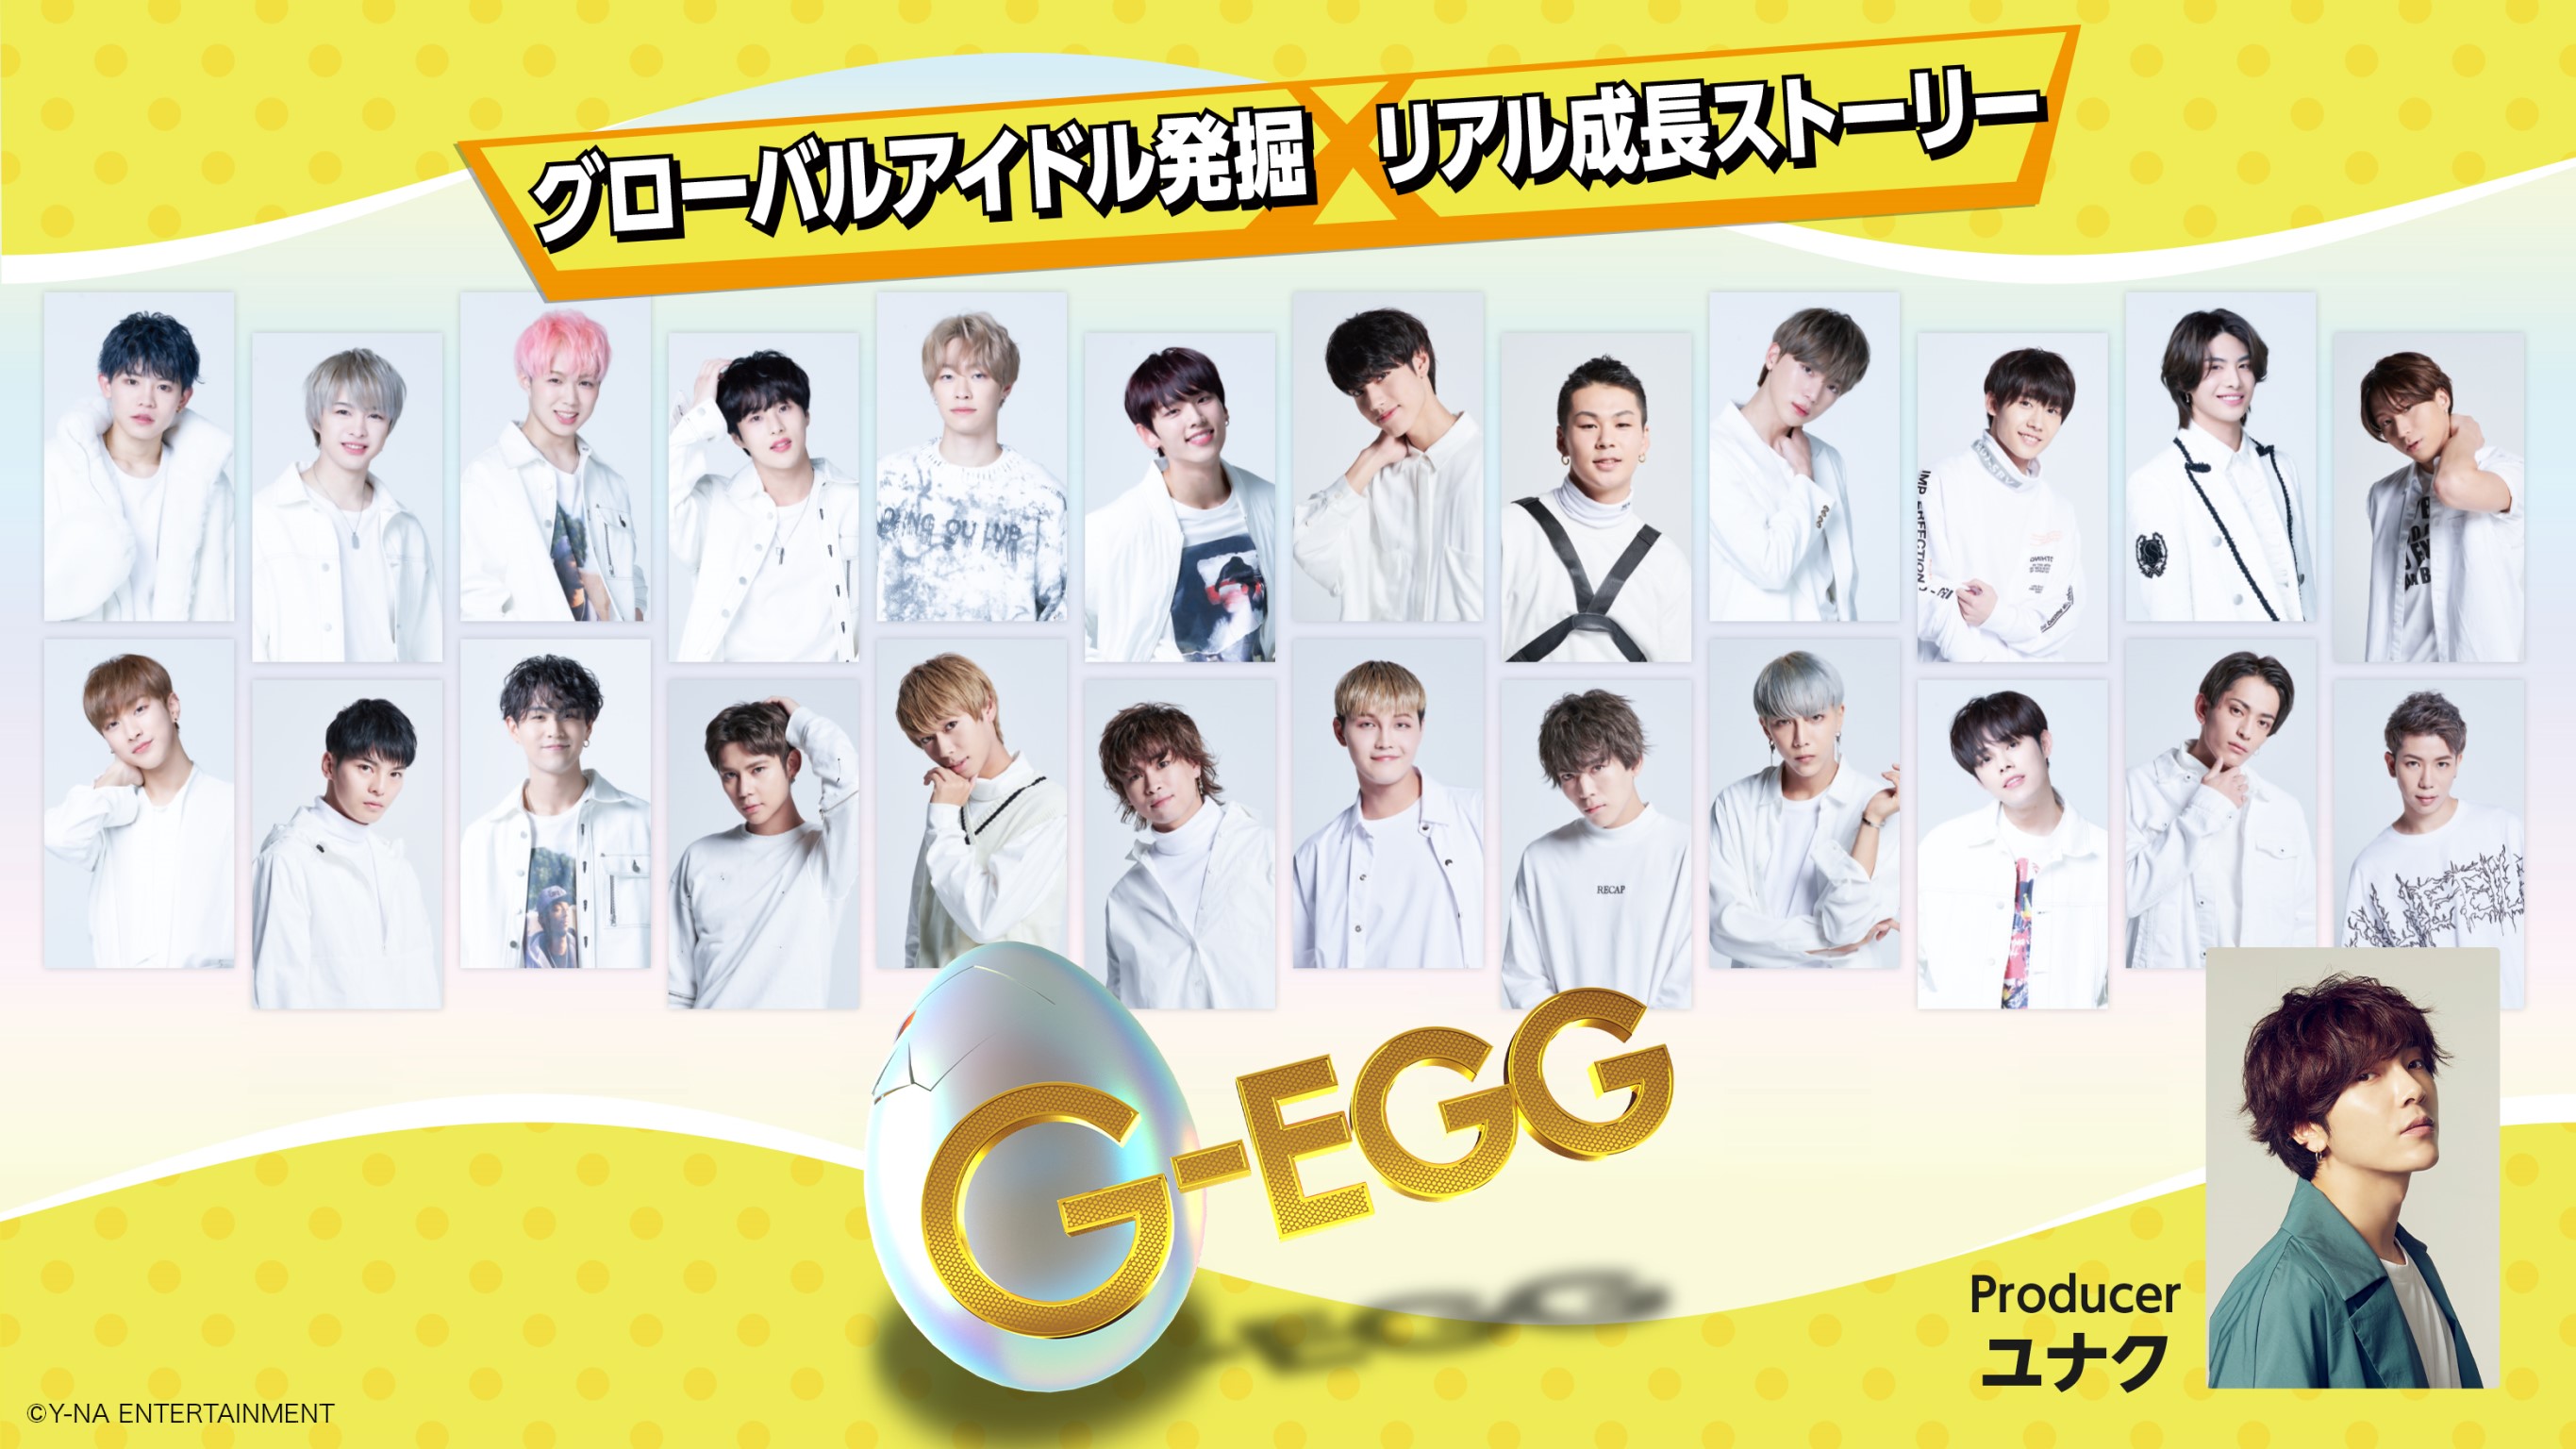 運命の最終回 日韓合同ボーイズグループ Nik のデビューメンバーを発表 G Egg 最終回 9 月 12 日 土 深 1 00 オンエア Mnetのプレスリリース